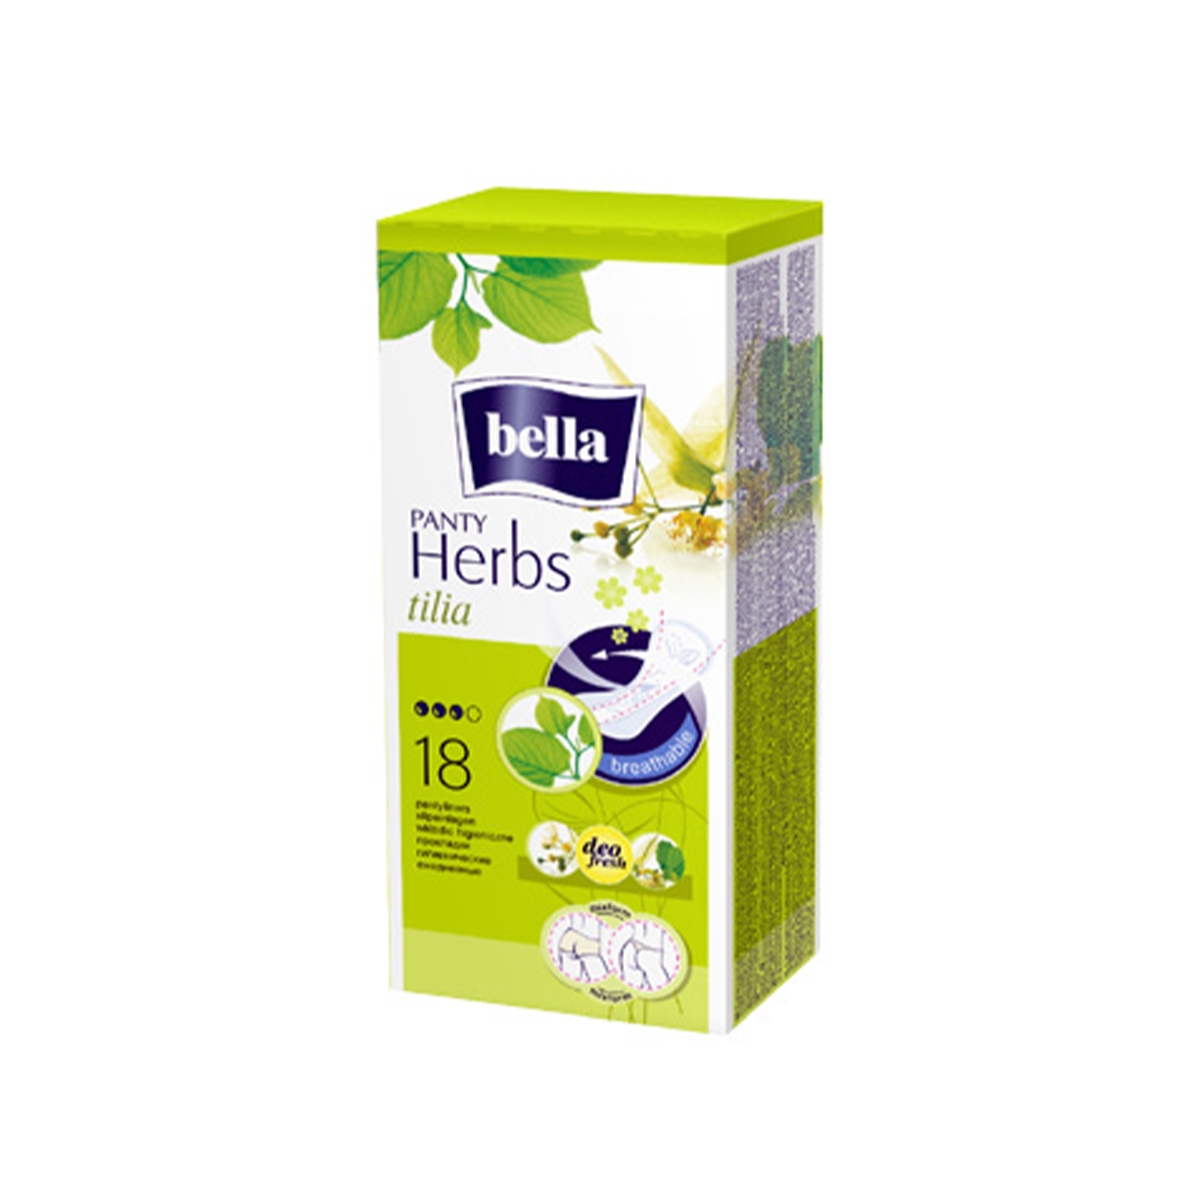 Bella Herbs slip Tilia 18 ks